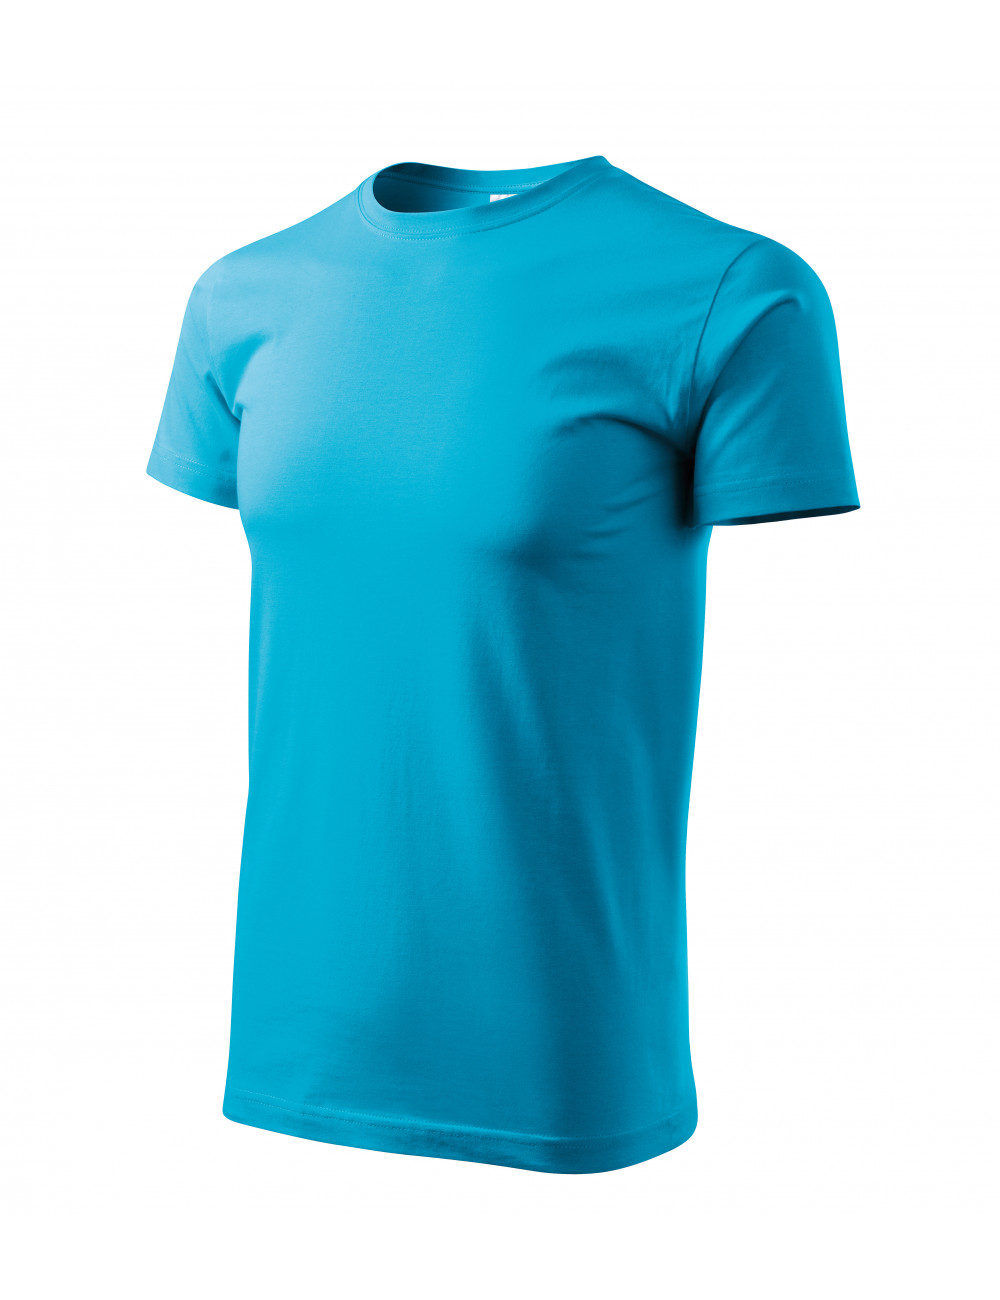 Men`s basic t-shirt 129 turquoise Adler Malfini